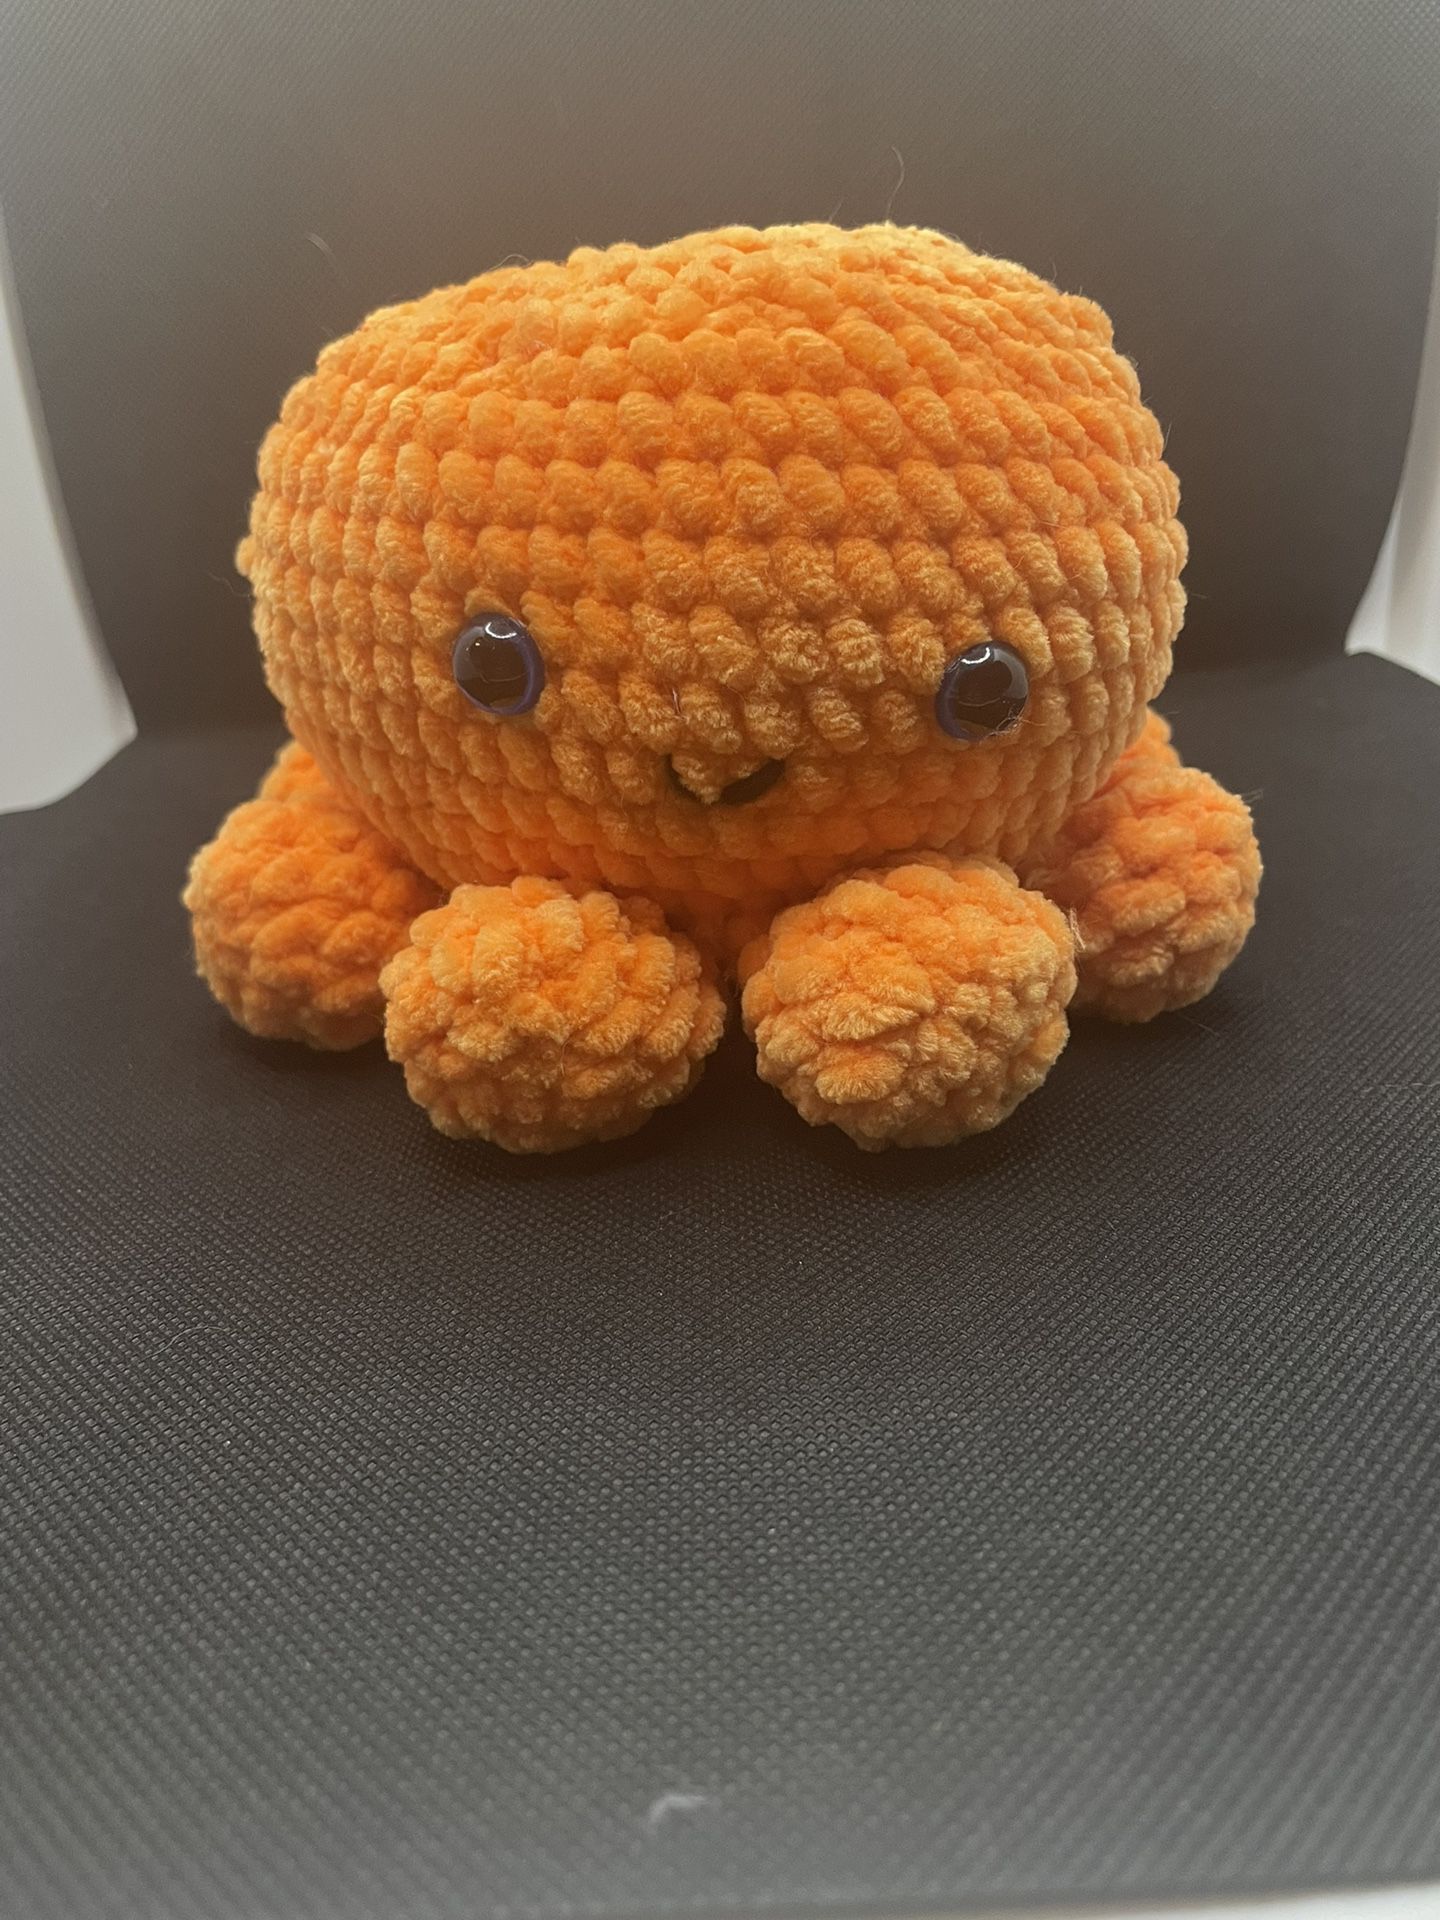  Crochet Octopus With Babies